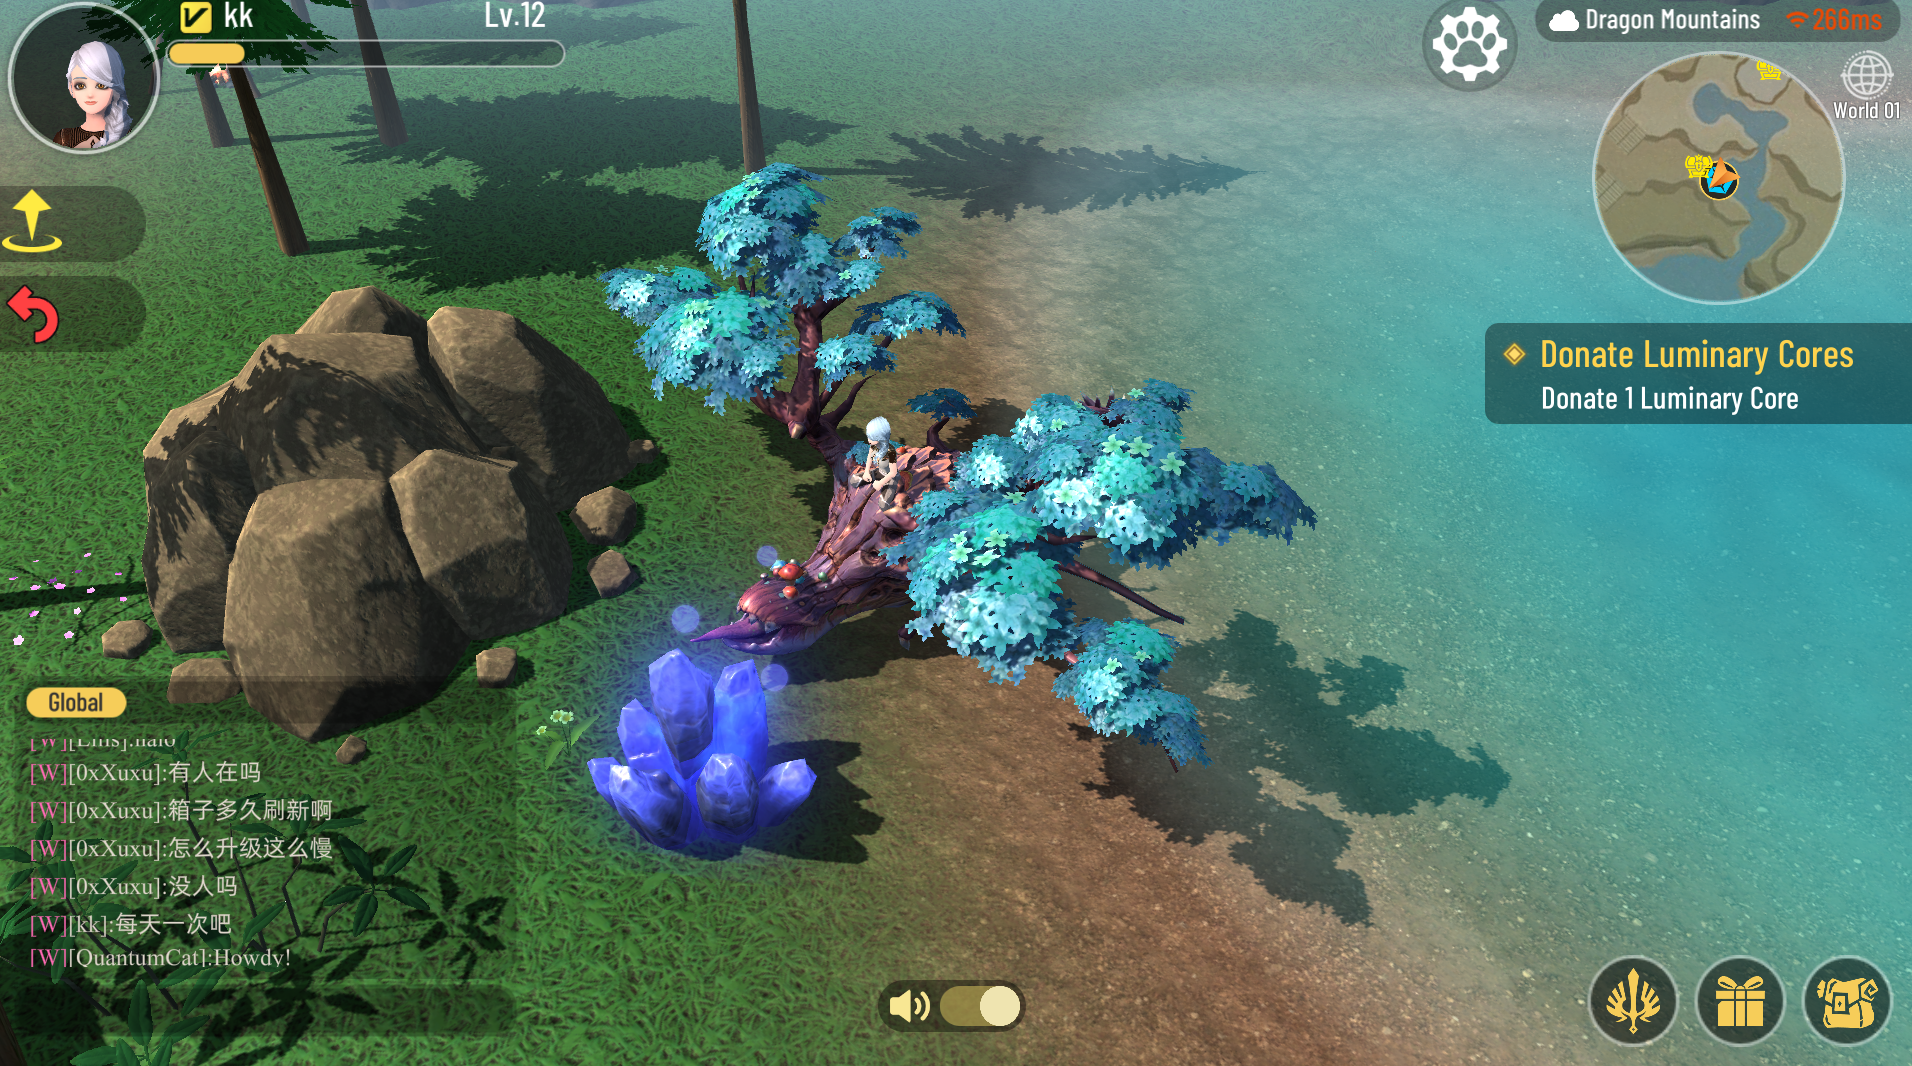 測試版游戲中的光核礦源場景，圖為騎龍降落在礦源附近